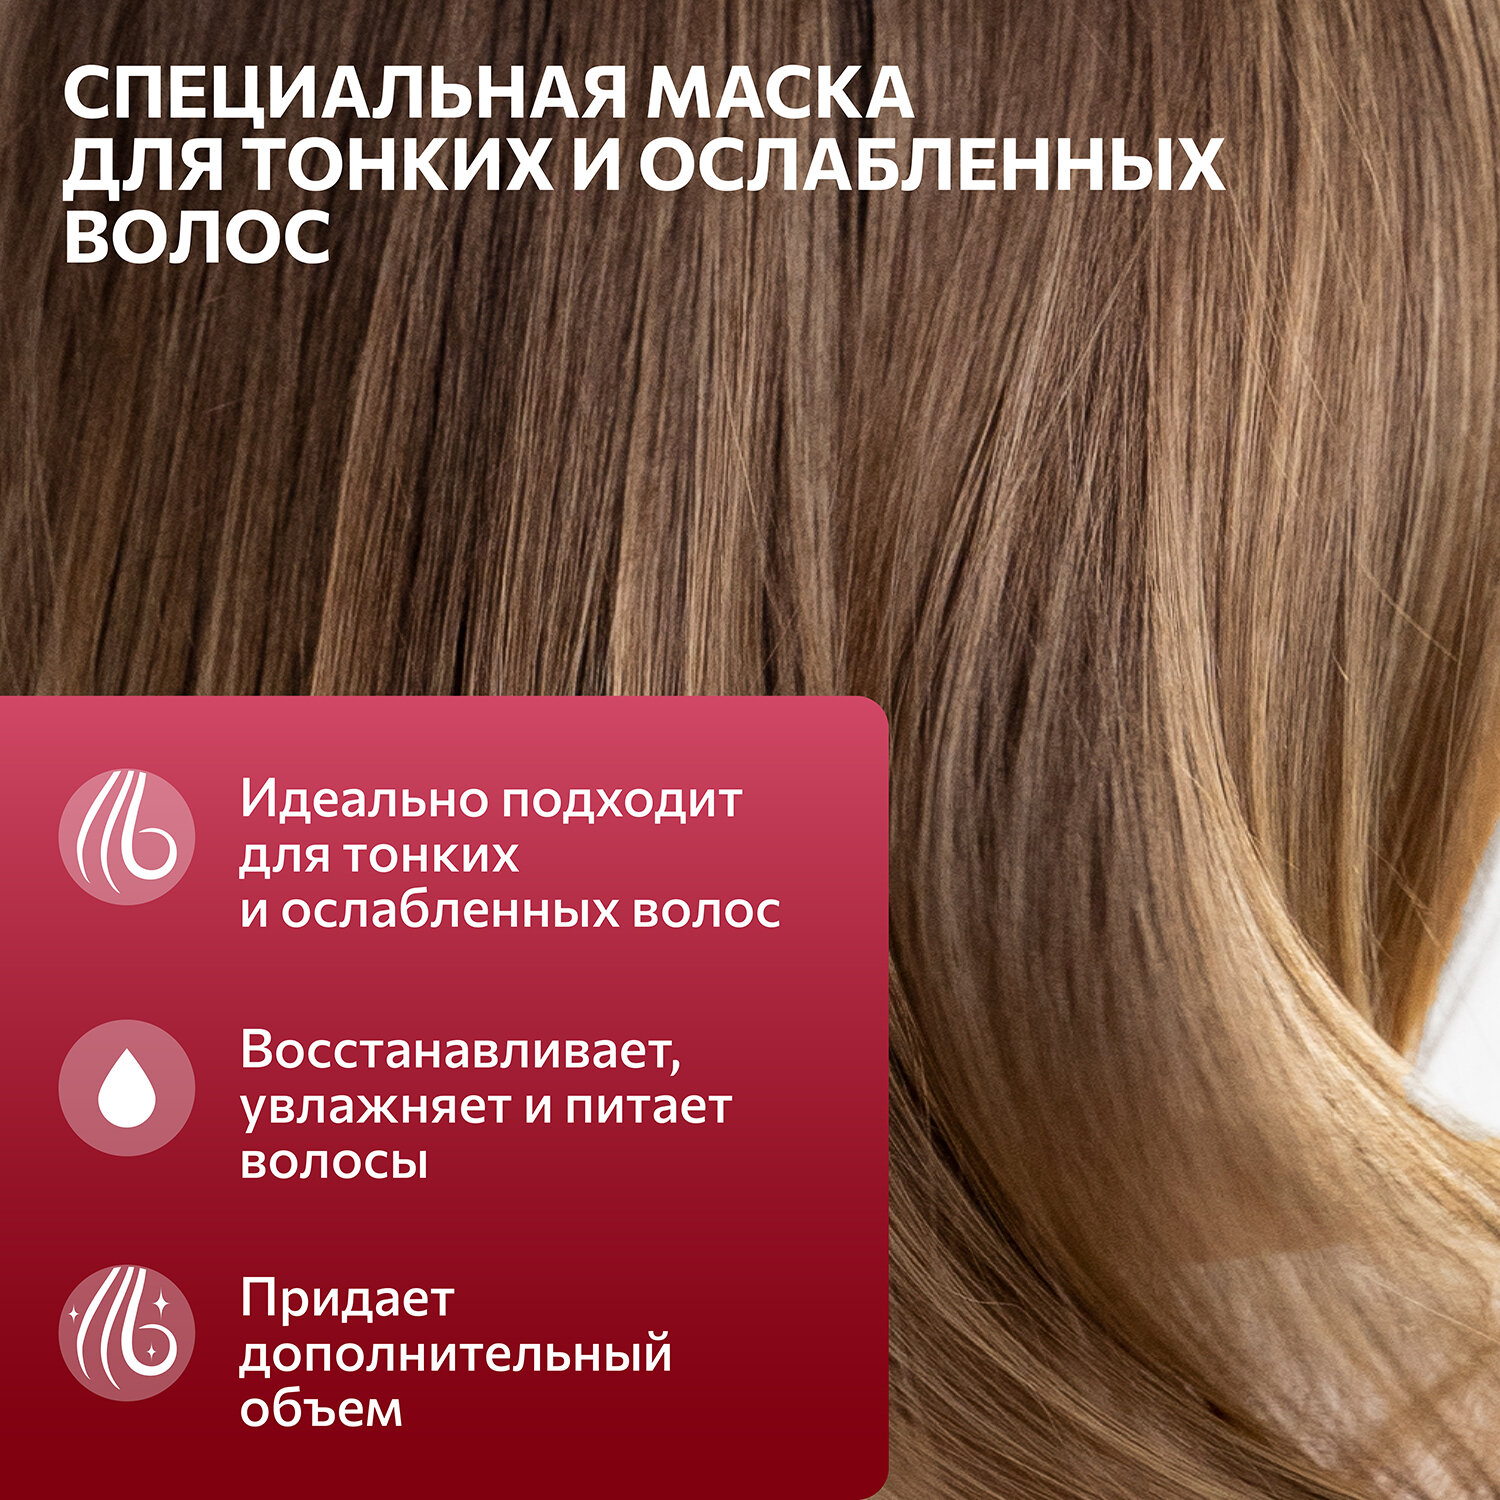 Constant Delight INTENSIVE Маска для волос Экстракт кератина Питание и сила, 1000 мл, бутылка